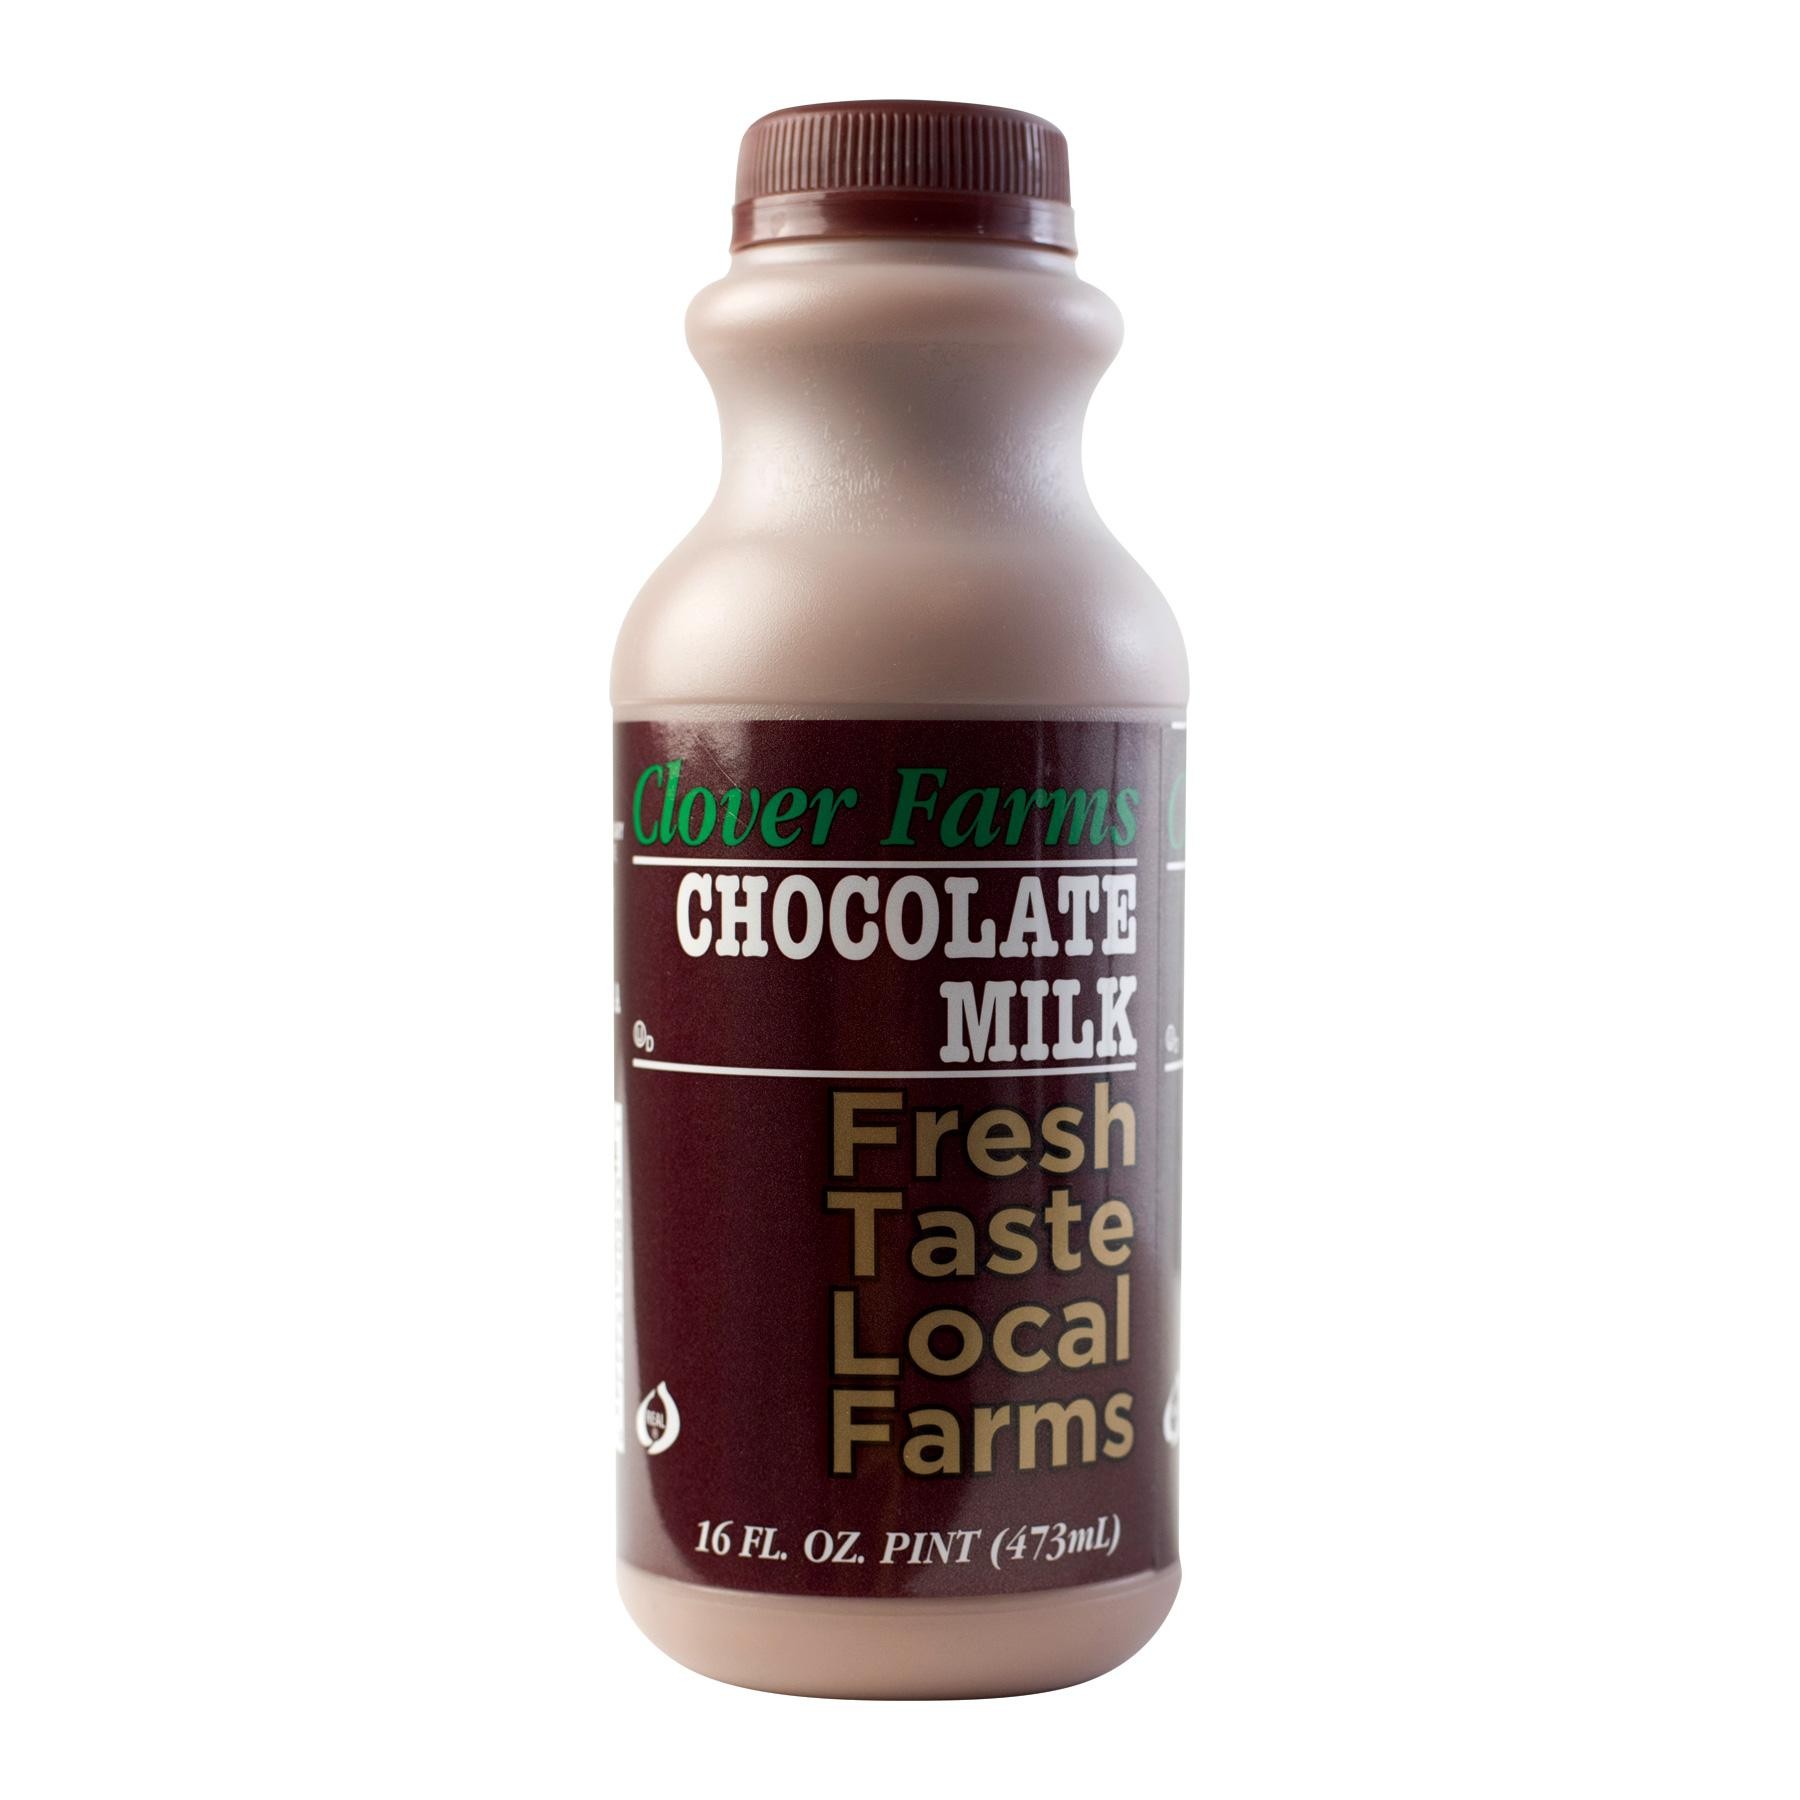 Clover Farms Chocolate Milk, 1 Pint